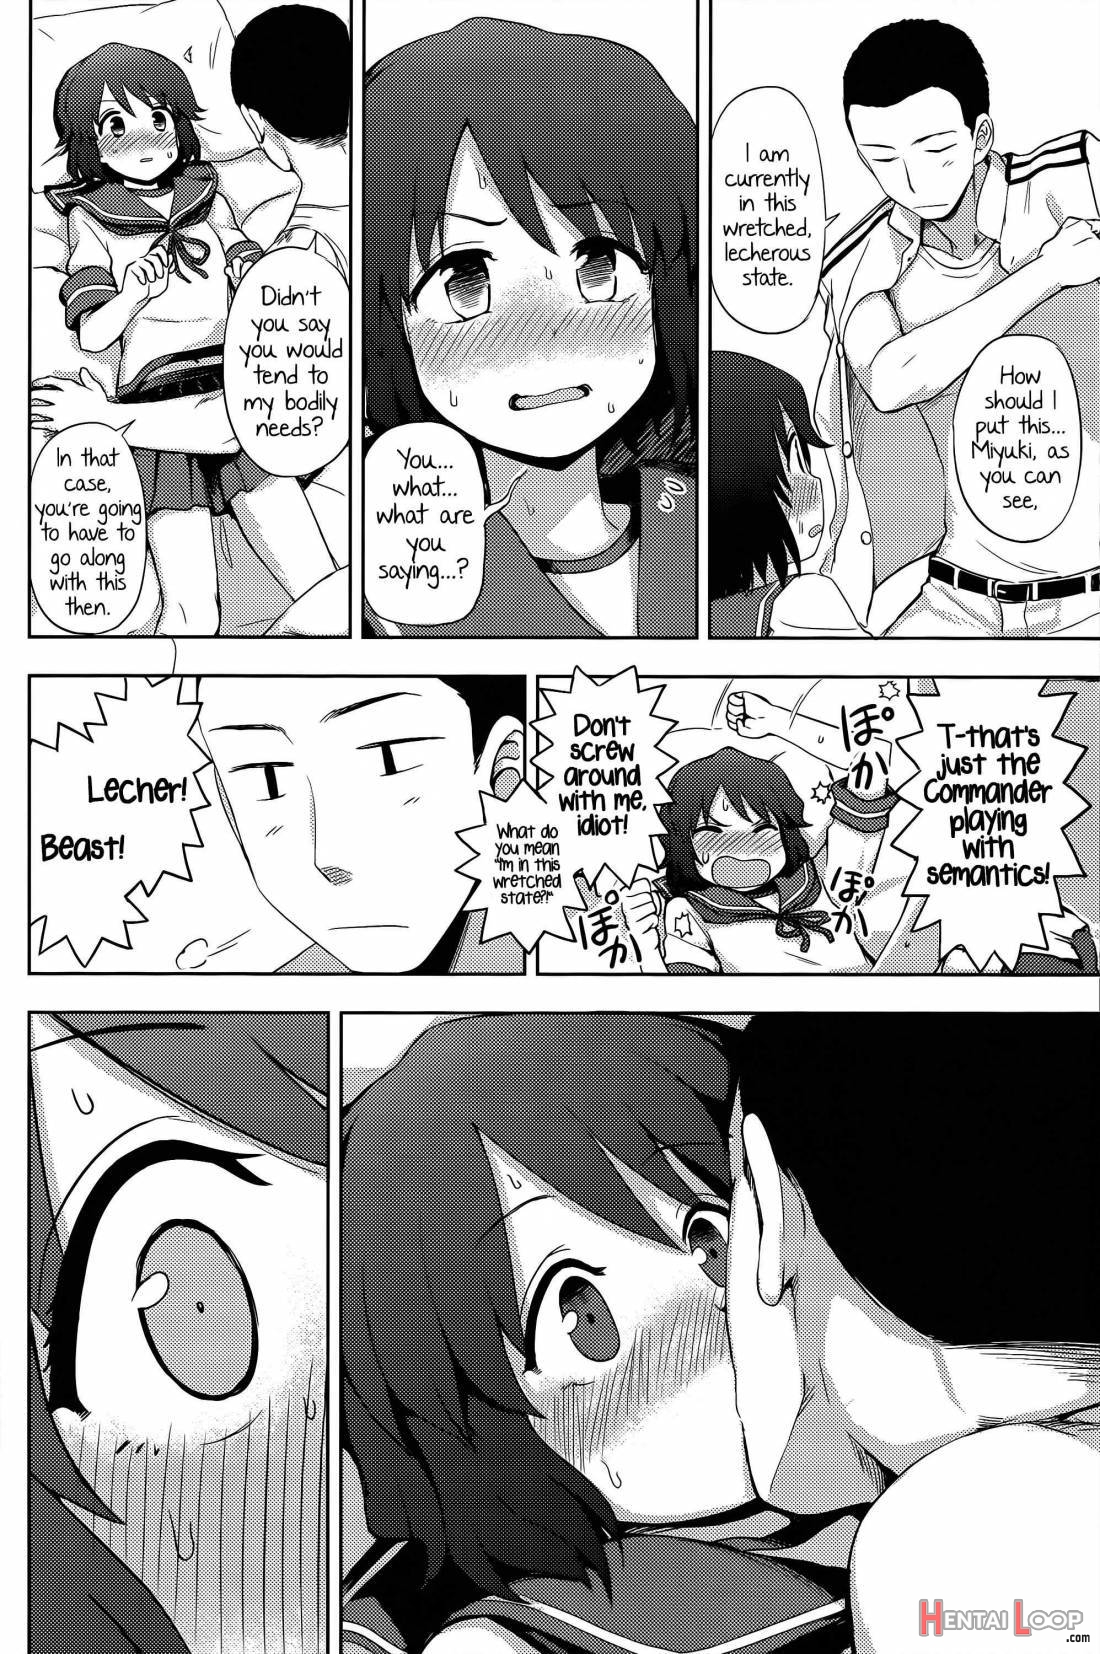 Miyuki-sama Ni Ichiban Nori! page 7